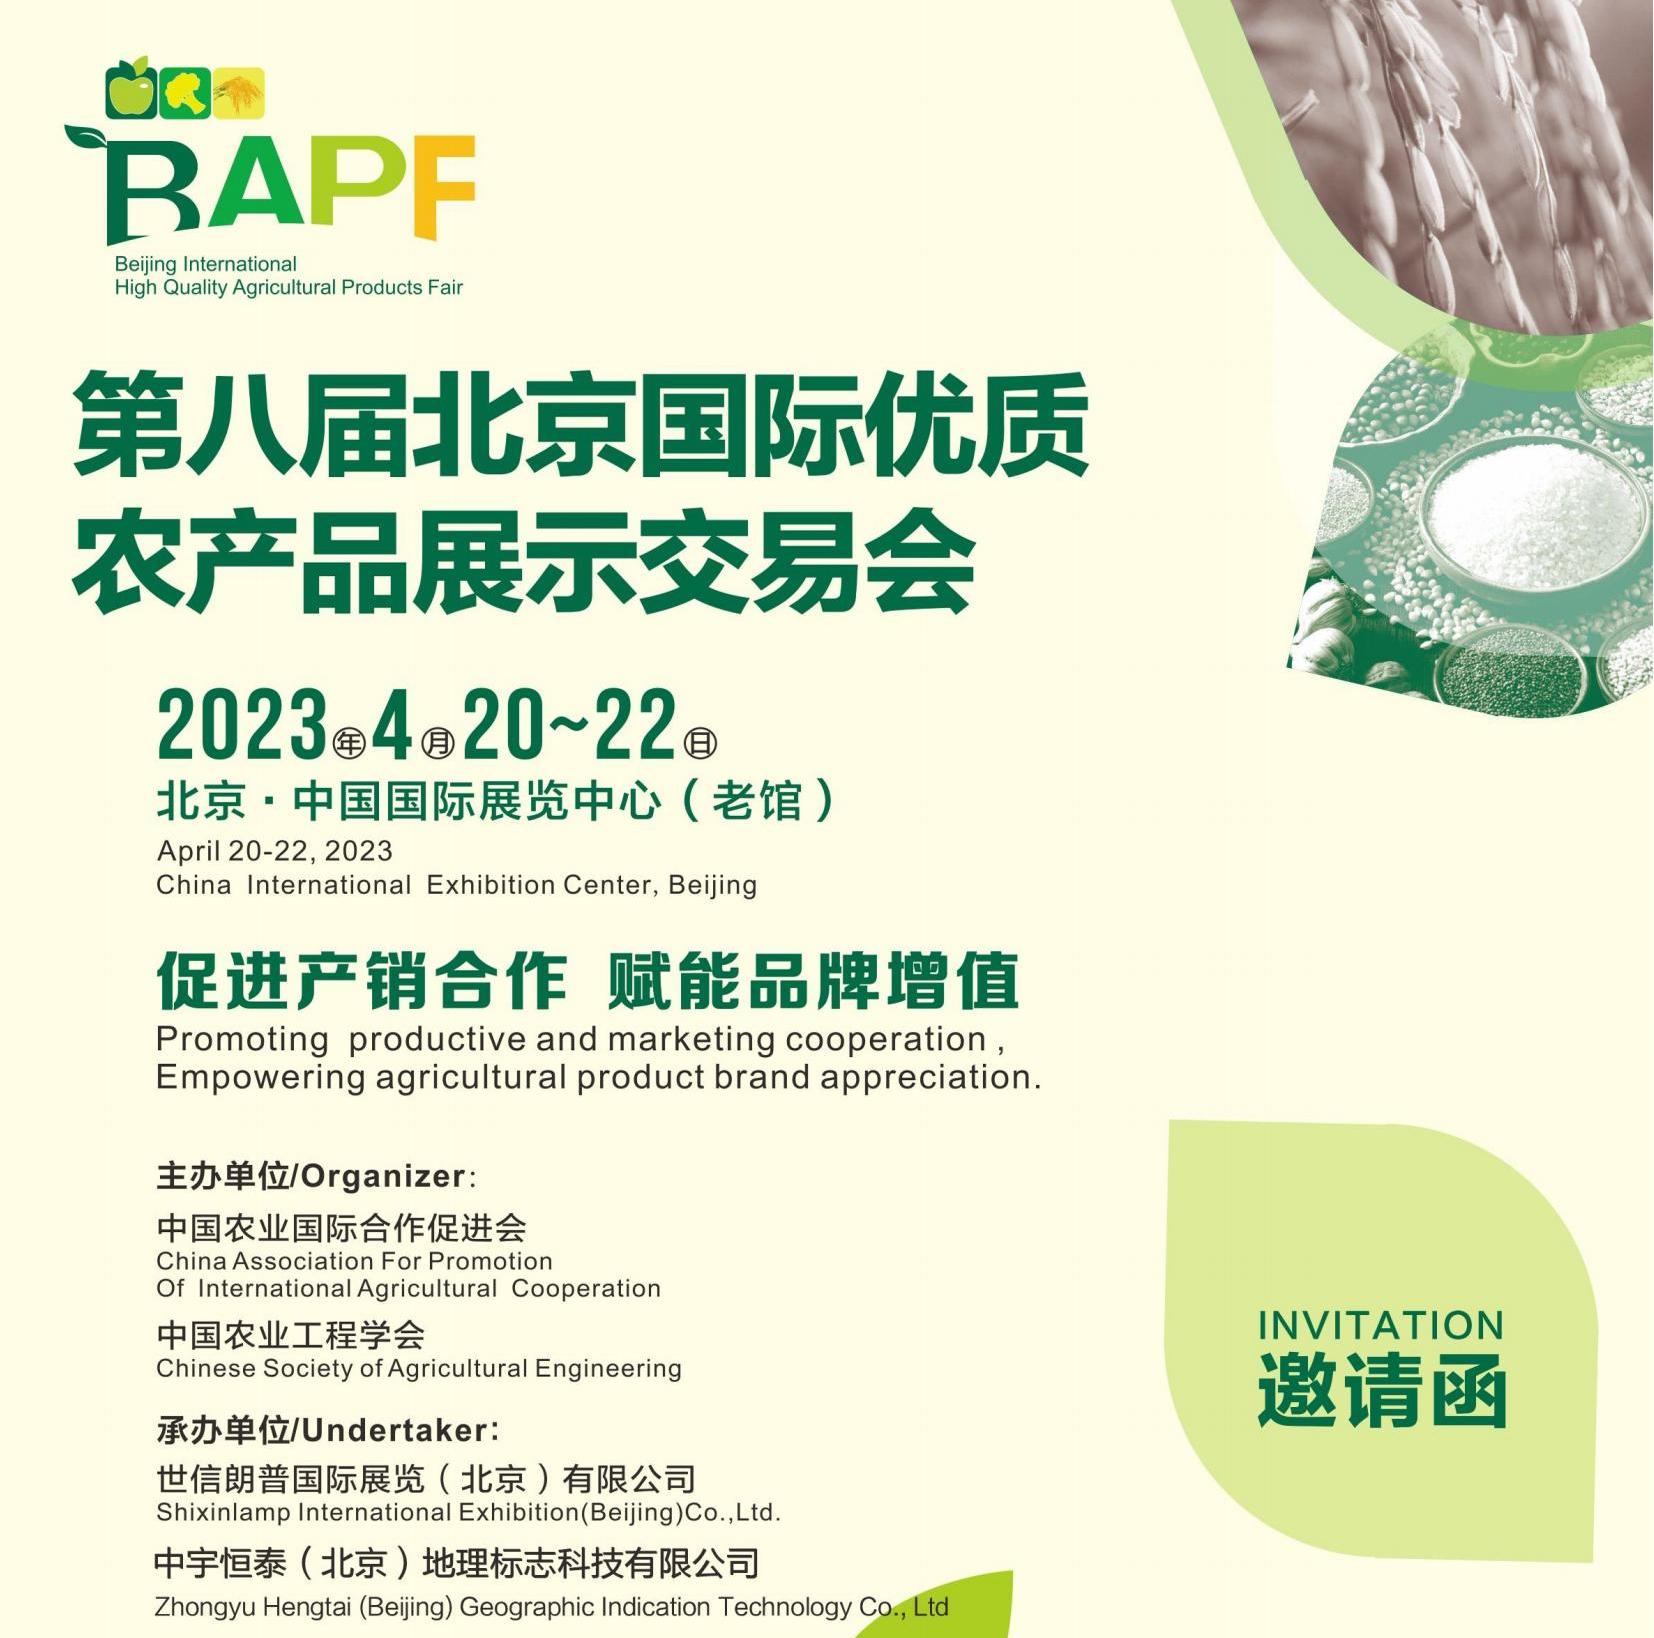 喜讯!2023第八届(北京)国际优质农产品交易会将于4月20日在中国国际展览中心盛大召开!